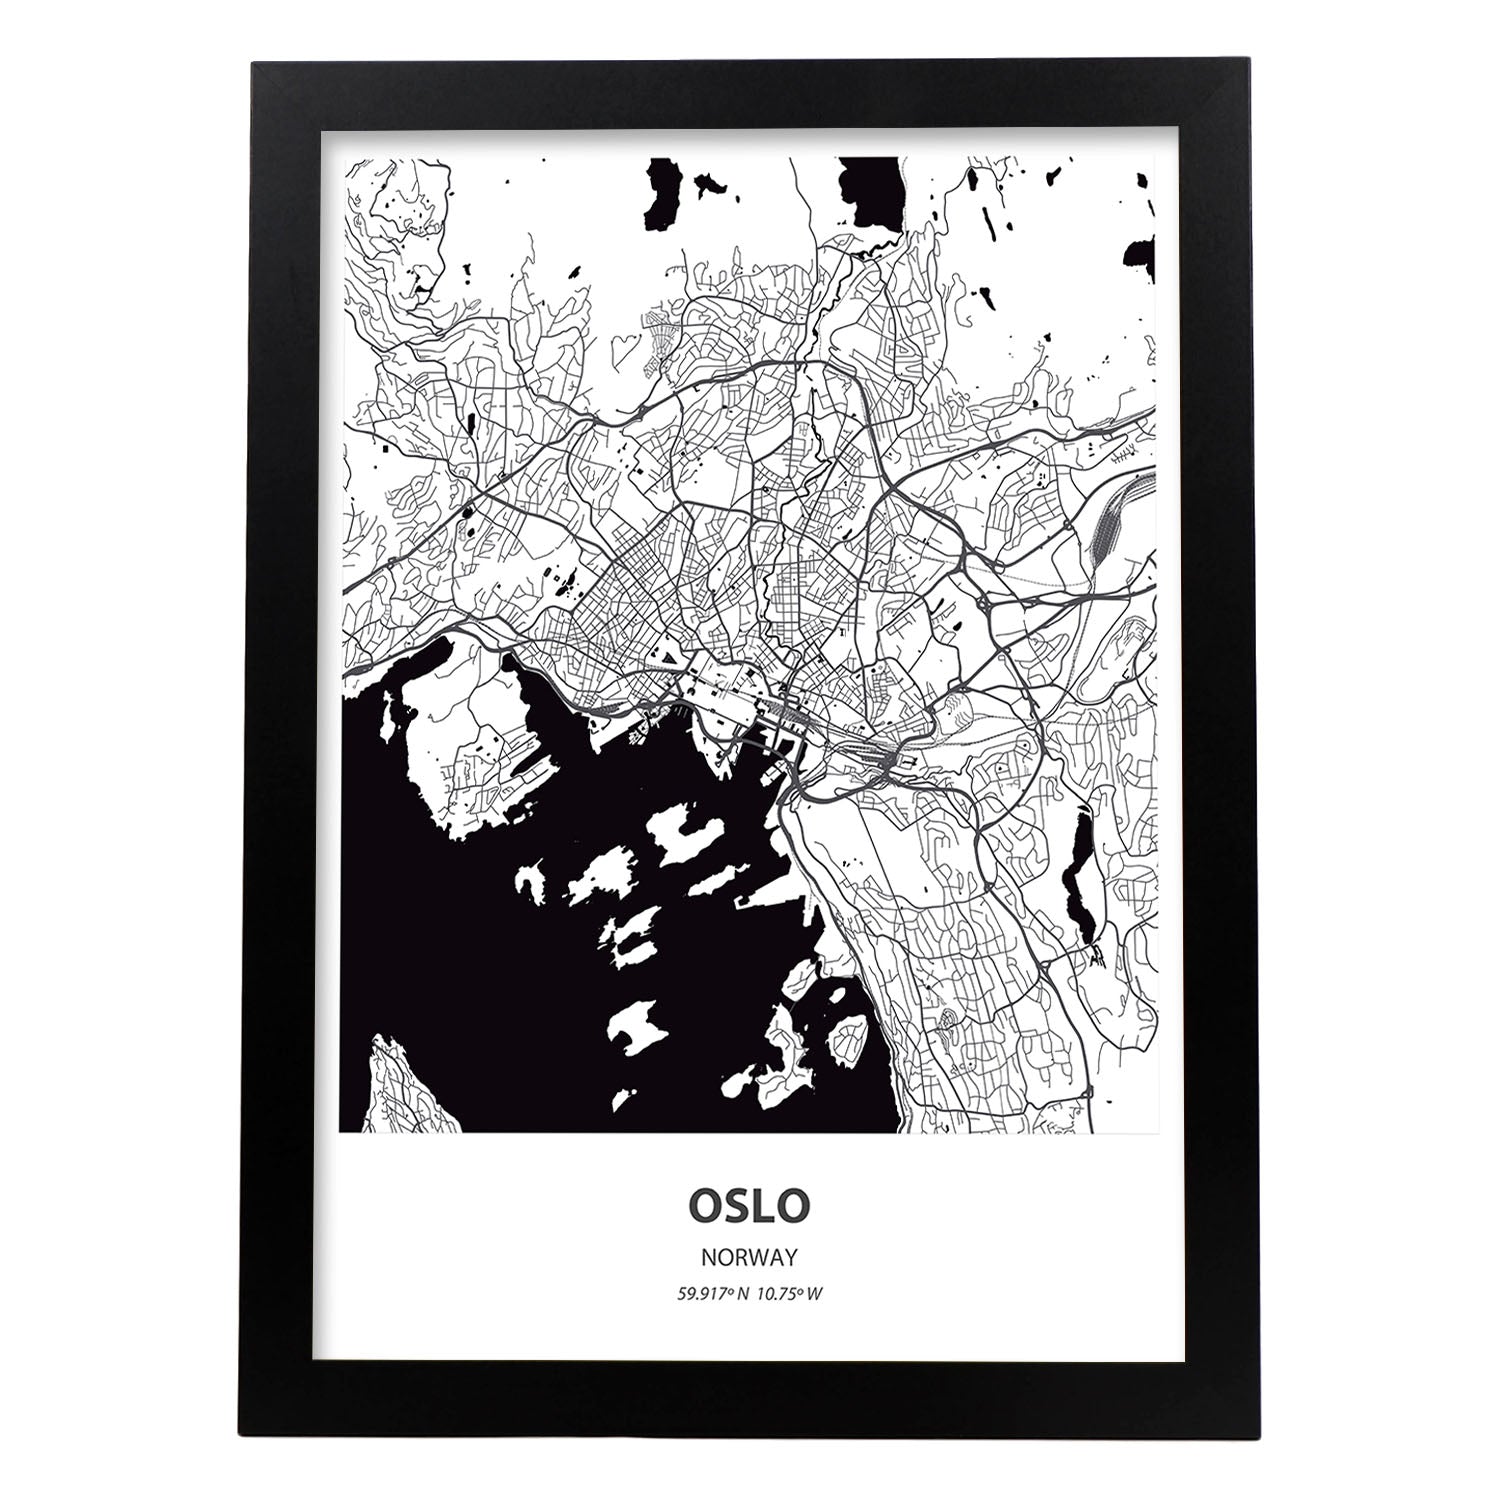 Poster con mapa de Oslo - Noruega. Láminas de ciudades del norte de Europa con mares y ríos en color negro.-Artwork-Nacnic-A4-Marco Negro-Nacnic Estudio SL